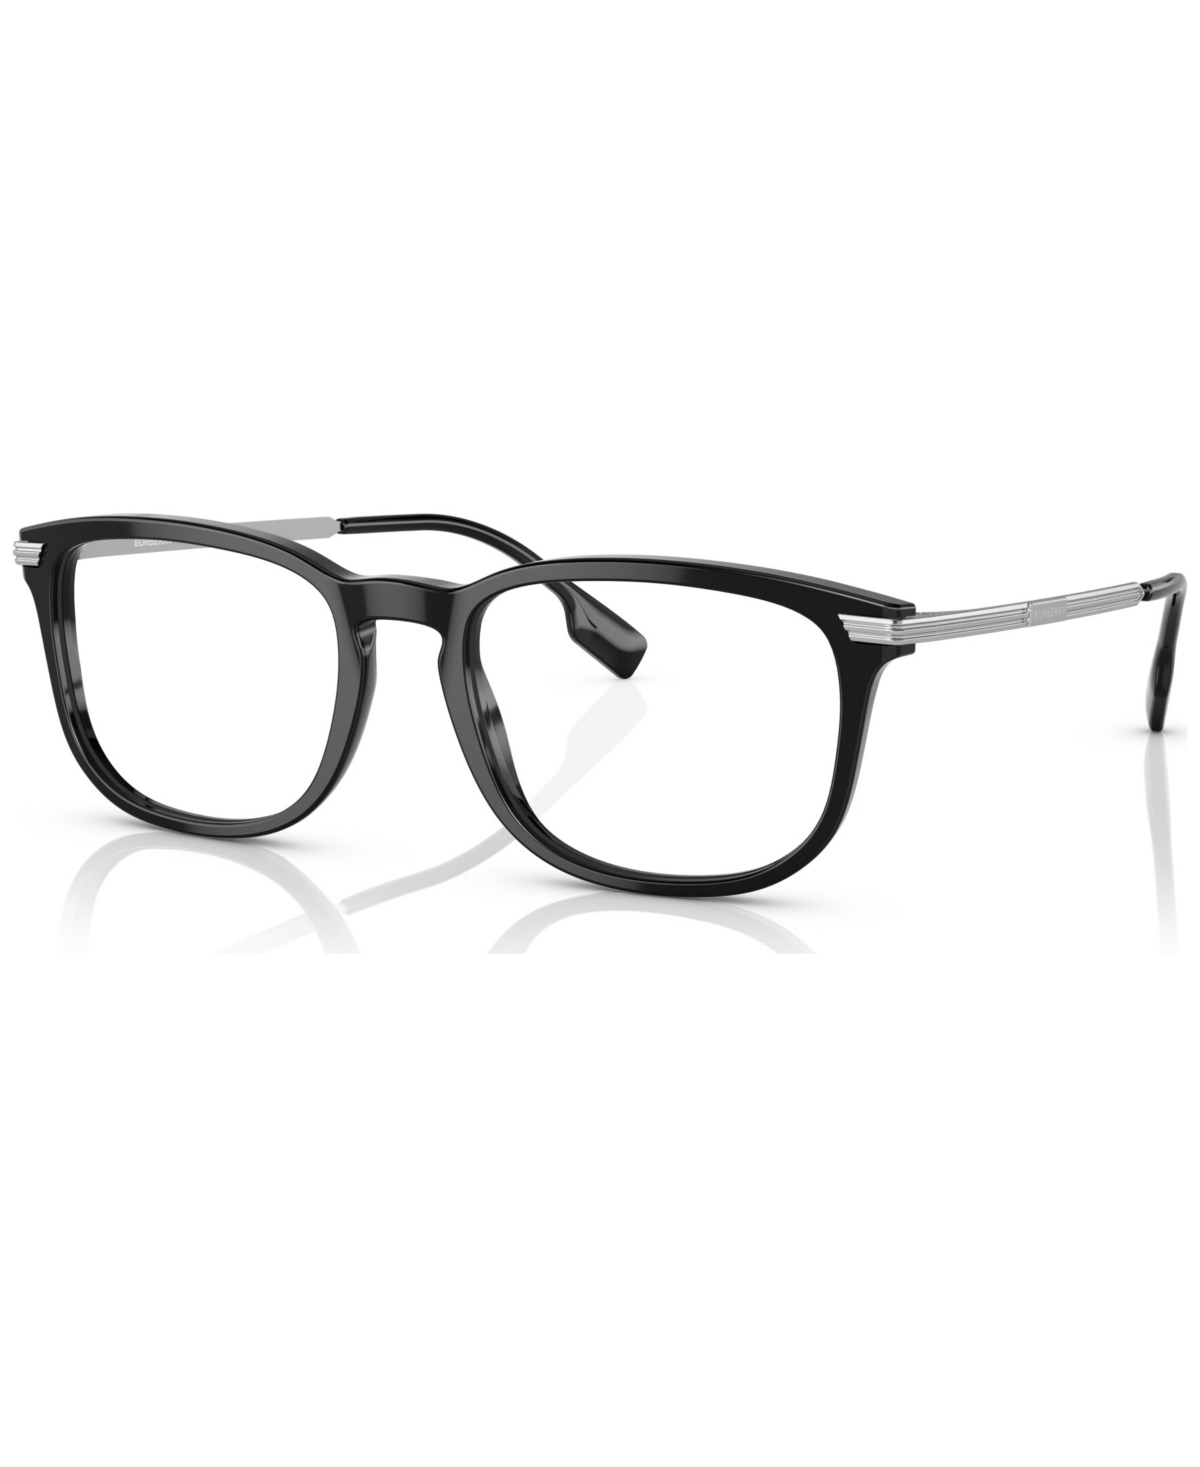 Men's Rectangle Eyeglasses, BE236954-o - Black